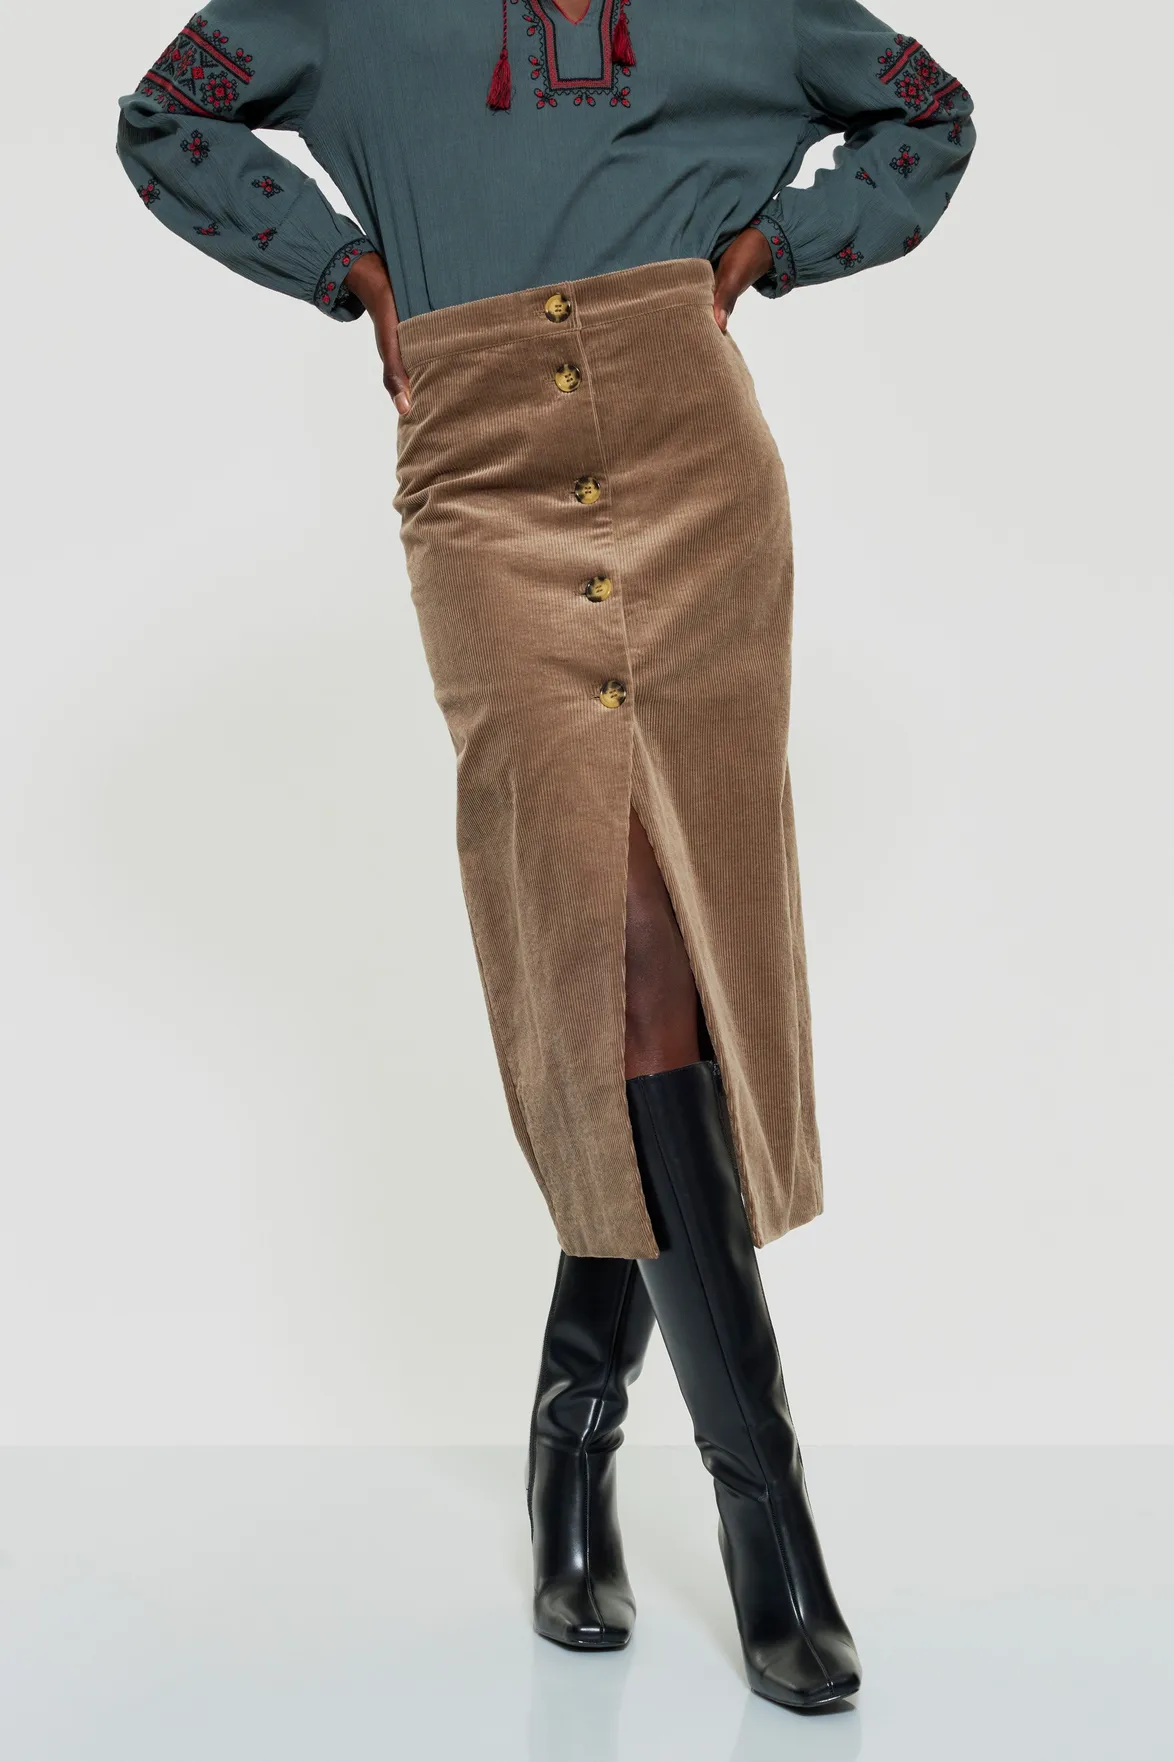 tilda brown cordoroy pencil skirt ⋆ תמרינדי | TAMARINDI | חנות לייף סטייל